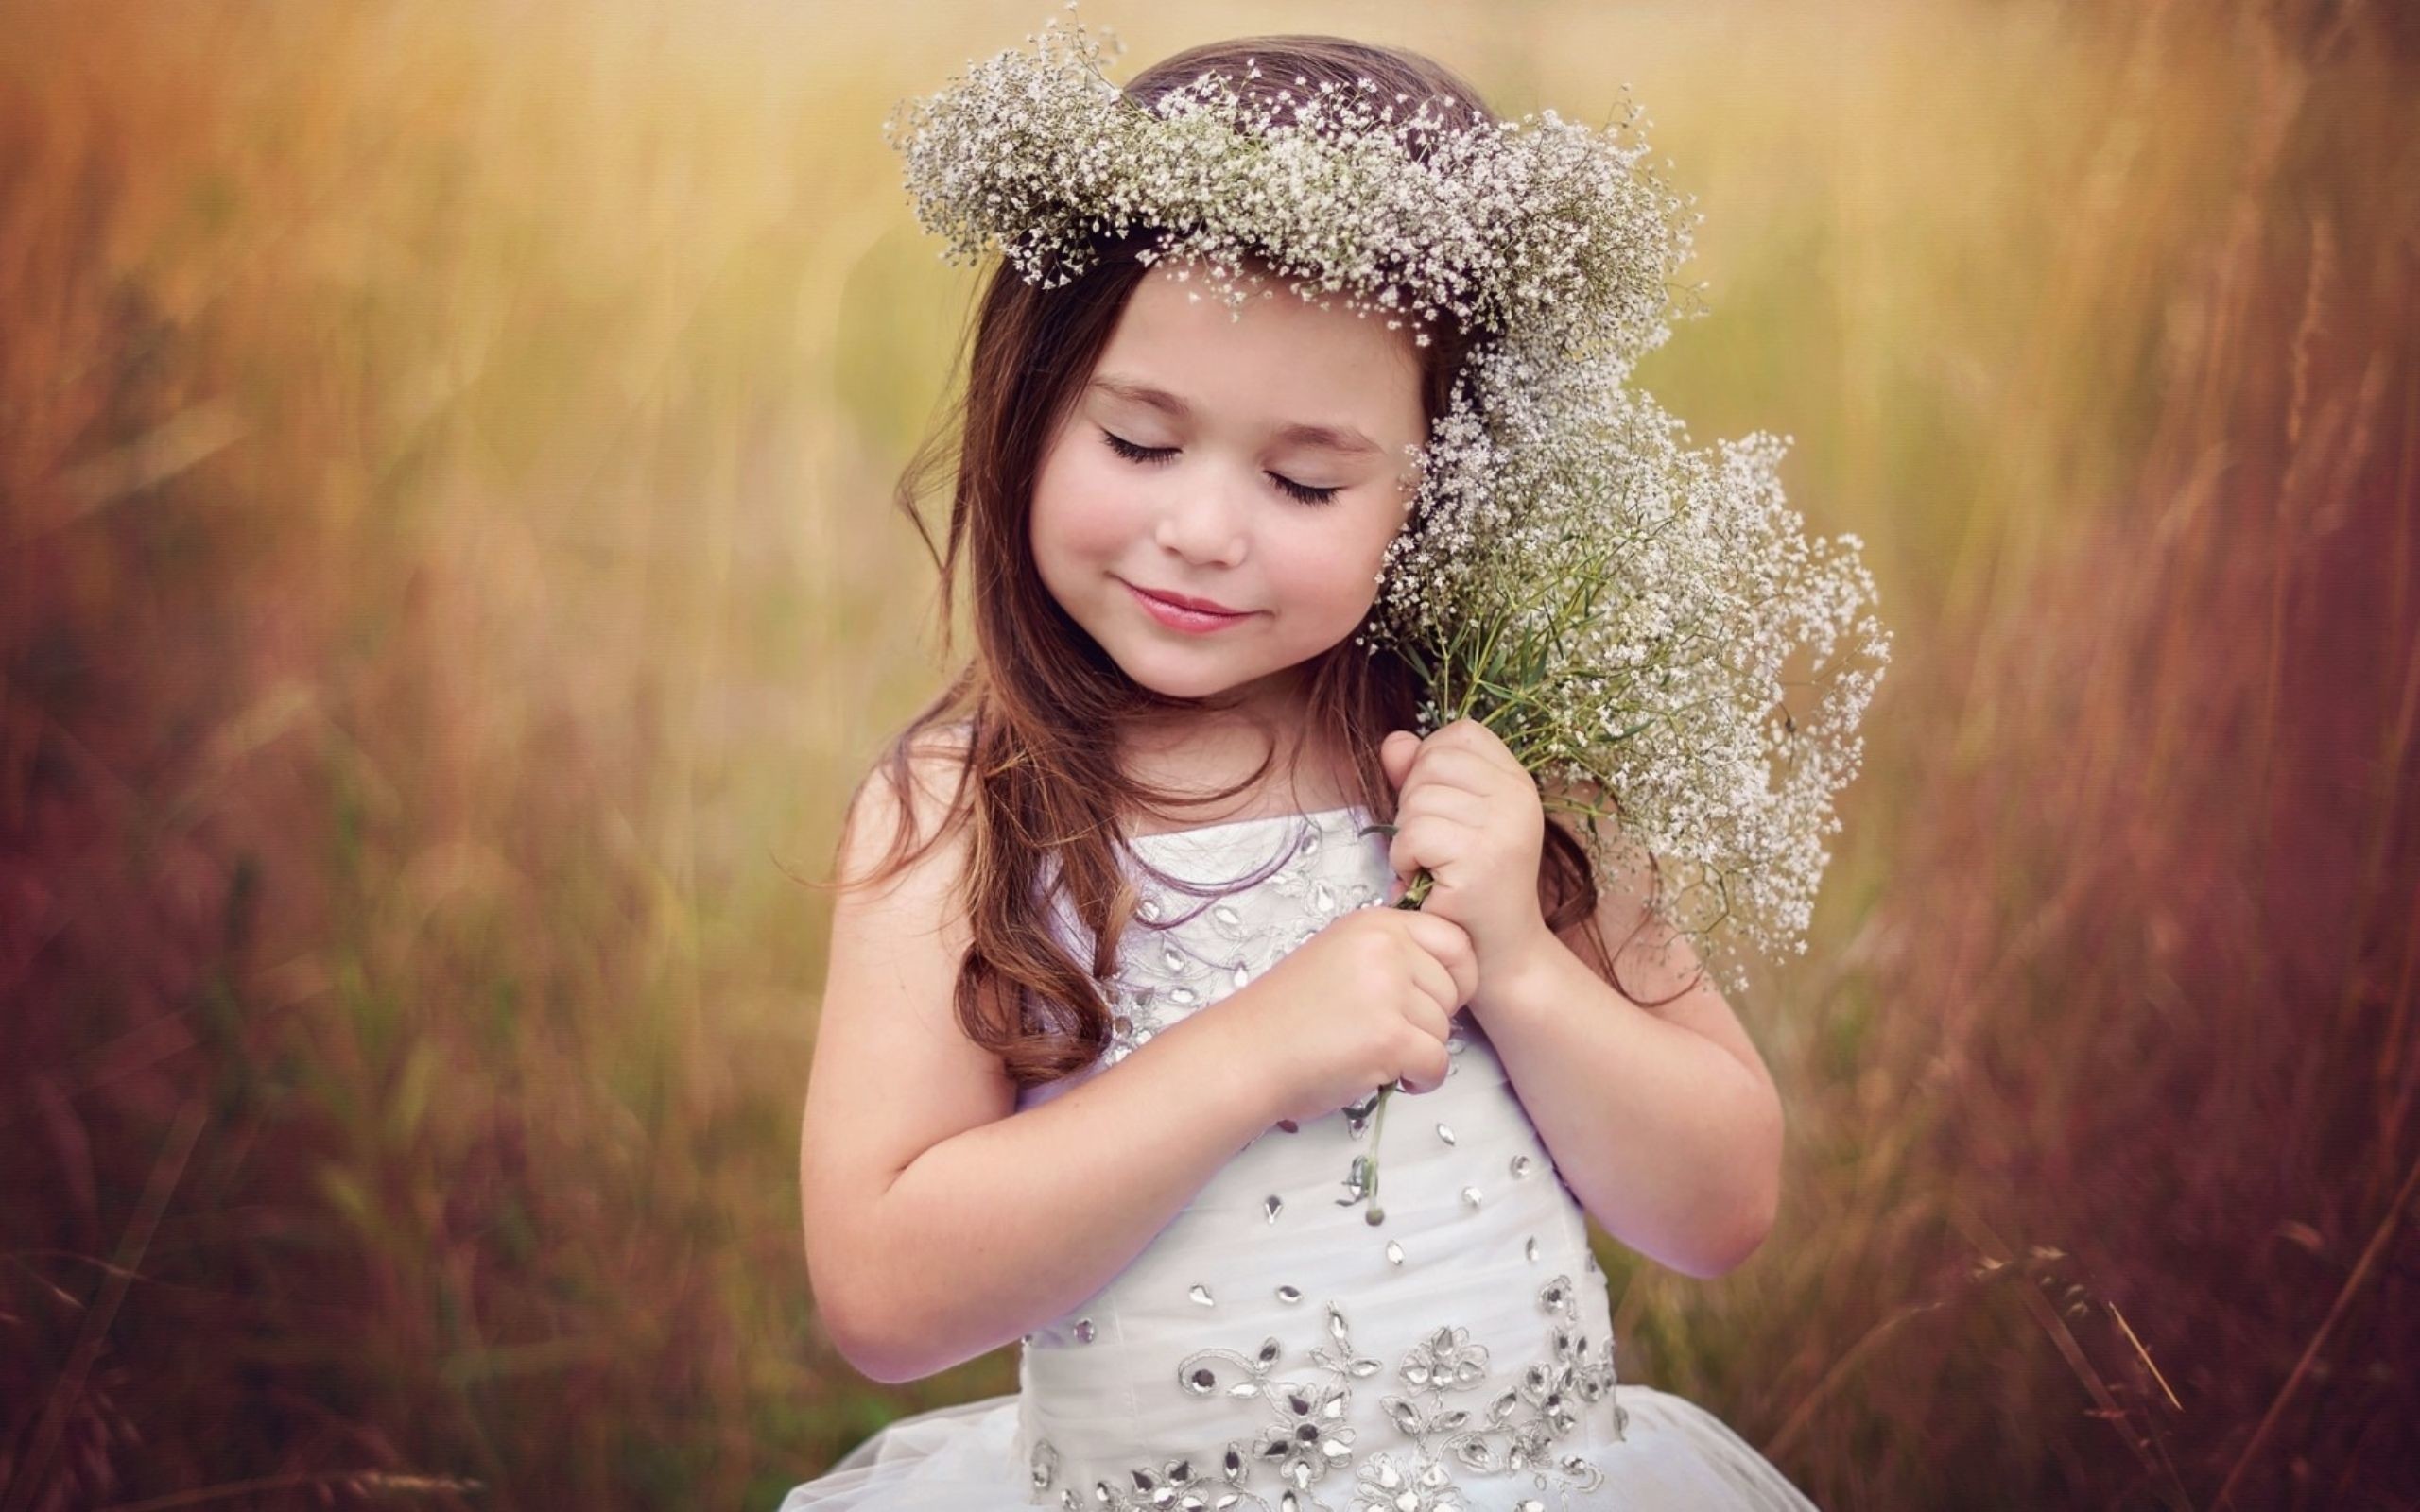 Cute Little Girl - Cute Little Girl Images Hd - 2560x1600 Wallpaper -  